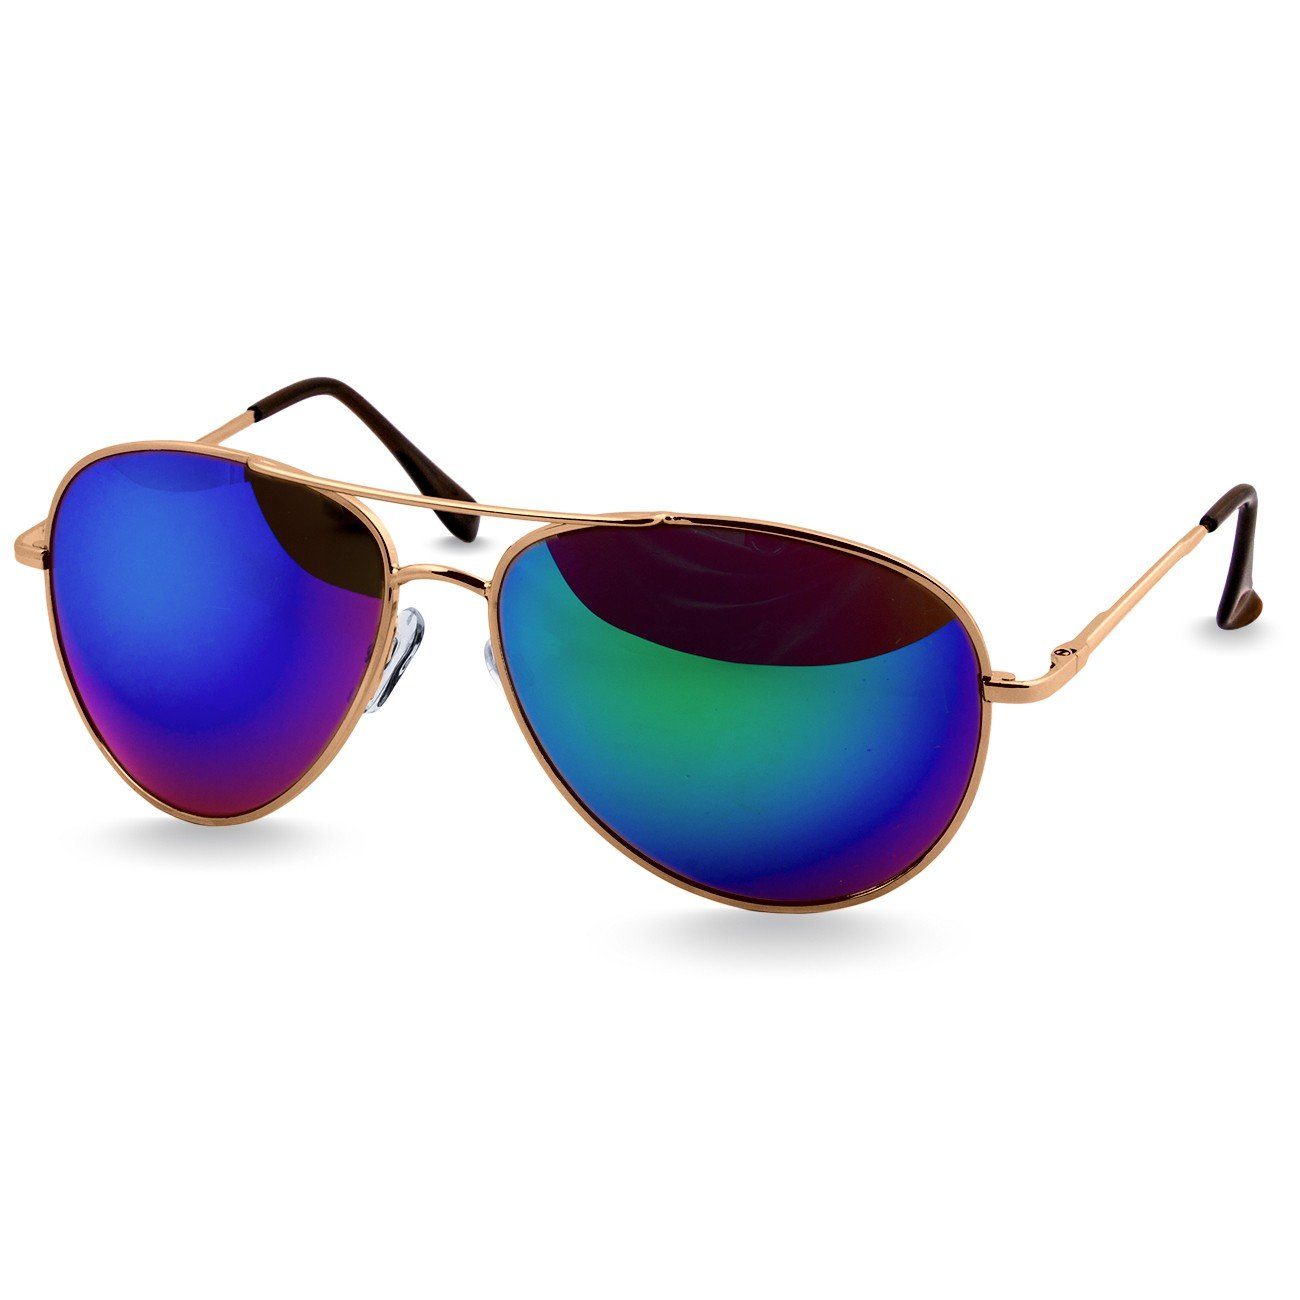 Caspar Sonnenbrille SG013 klassische Pilotenbrille verspiegelt lila gold / Unisex Retro